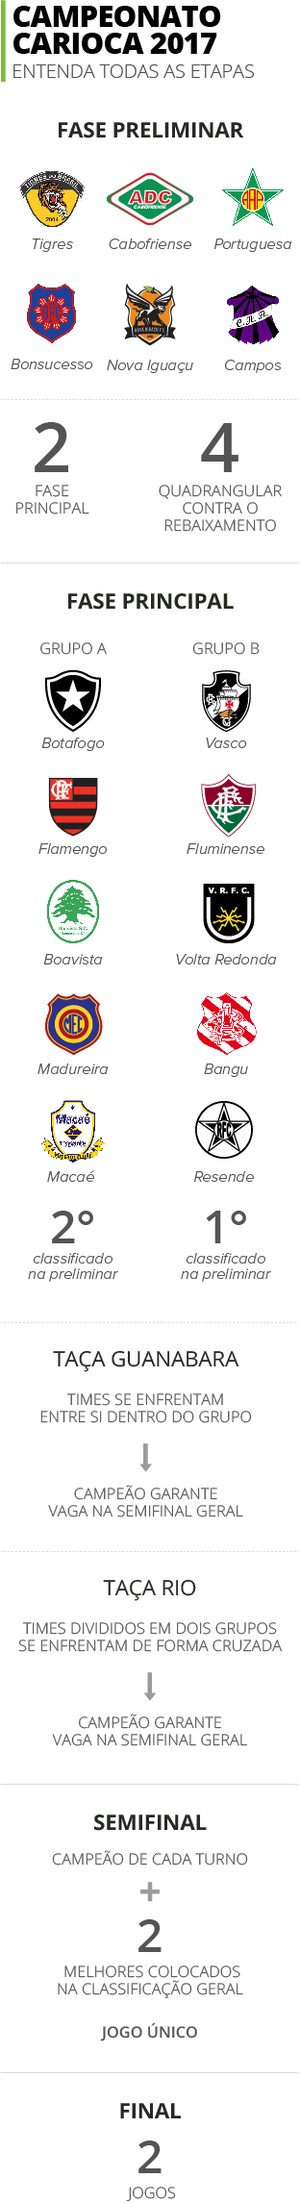 Info Campeonato Carioca (Foto: Infoesporte)